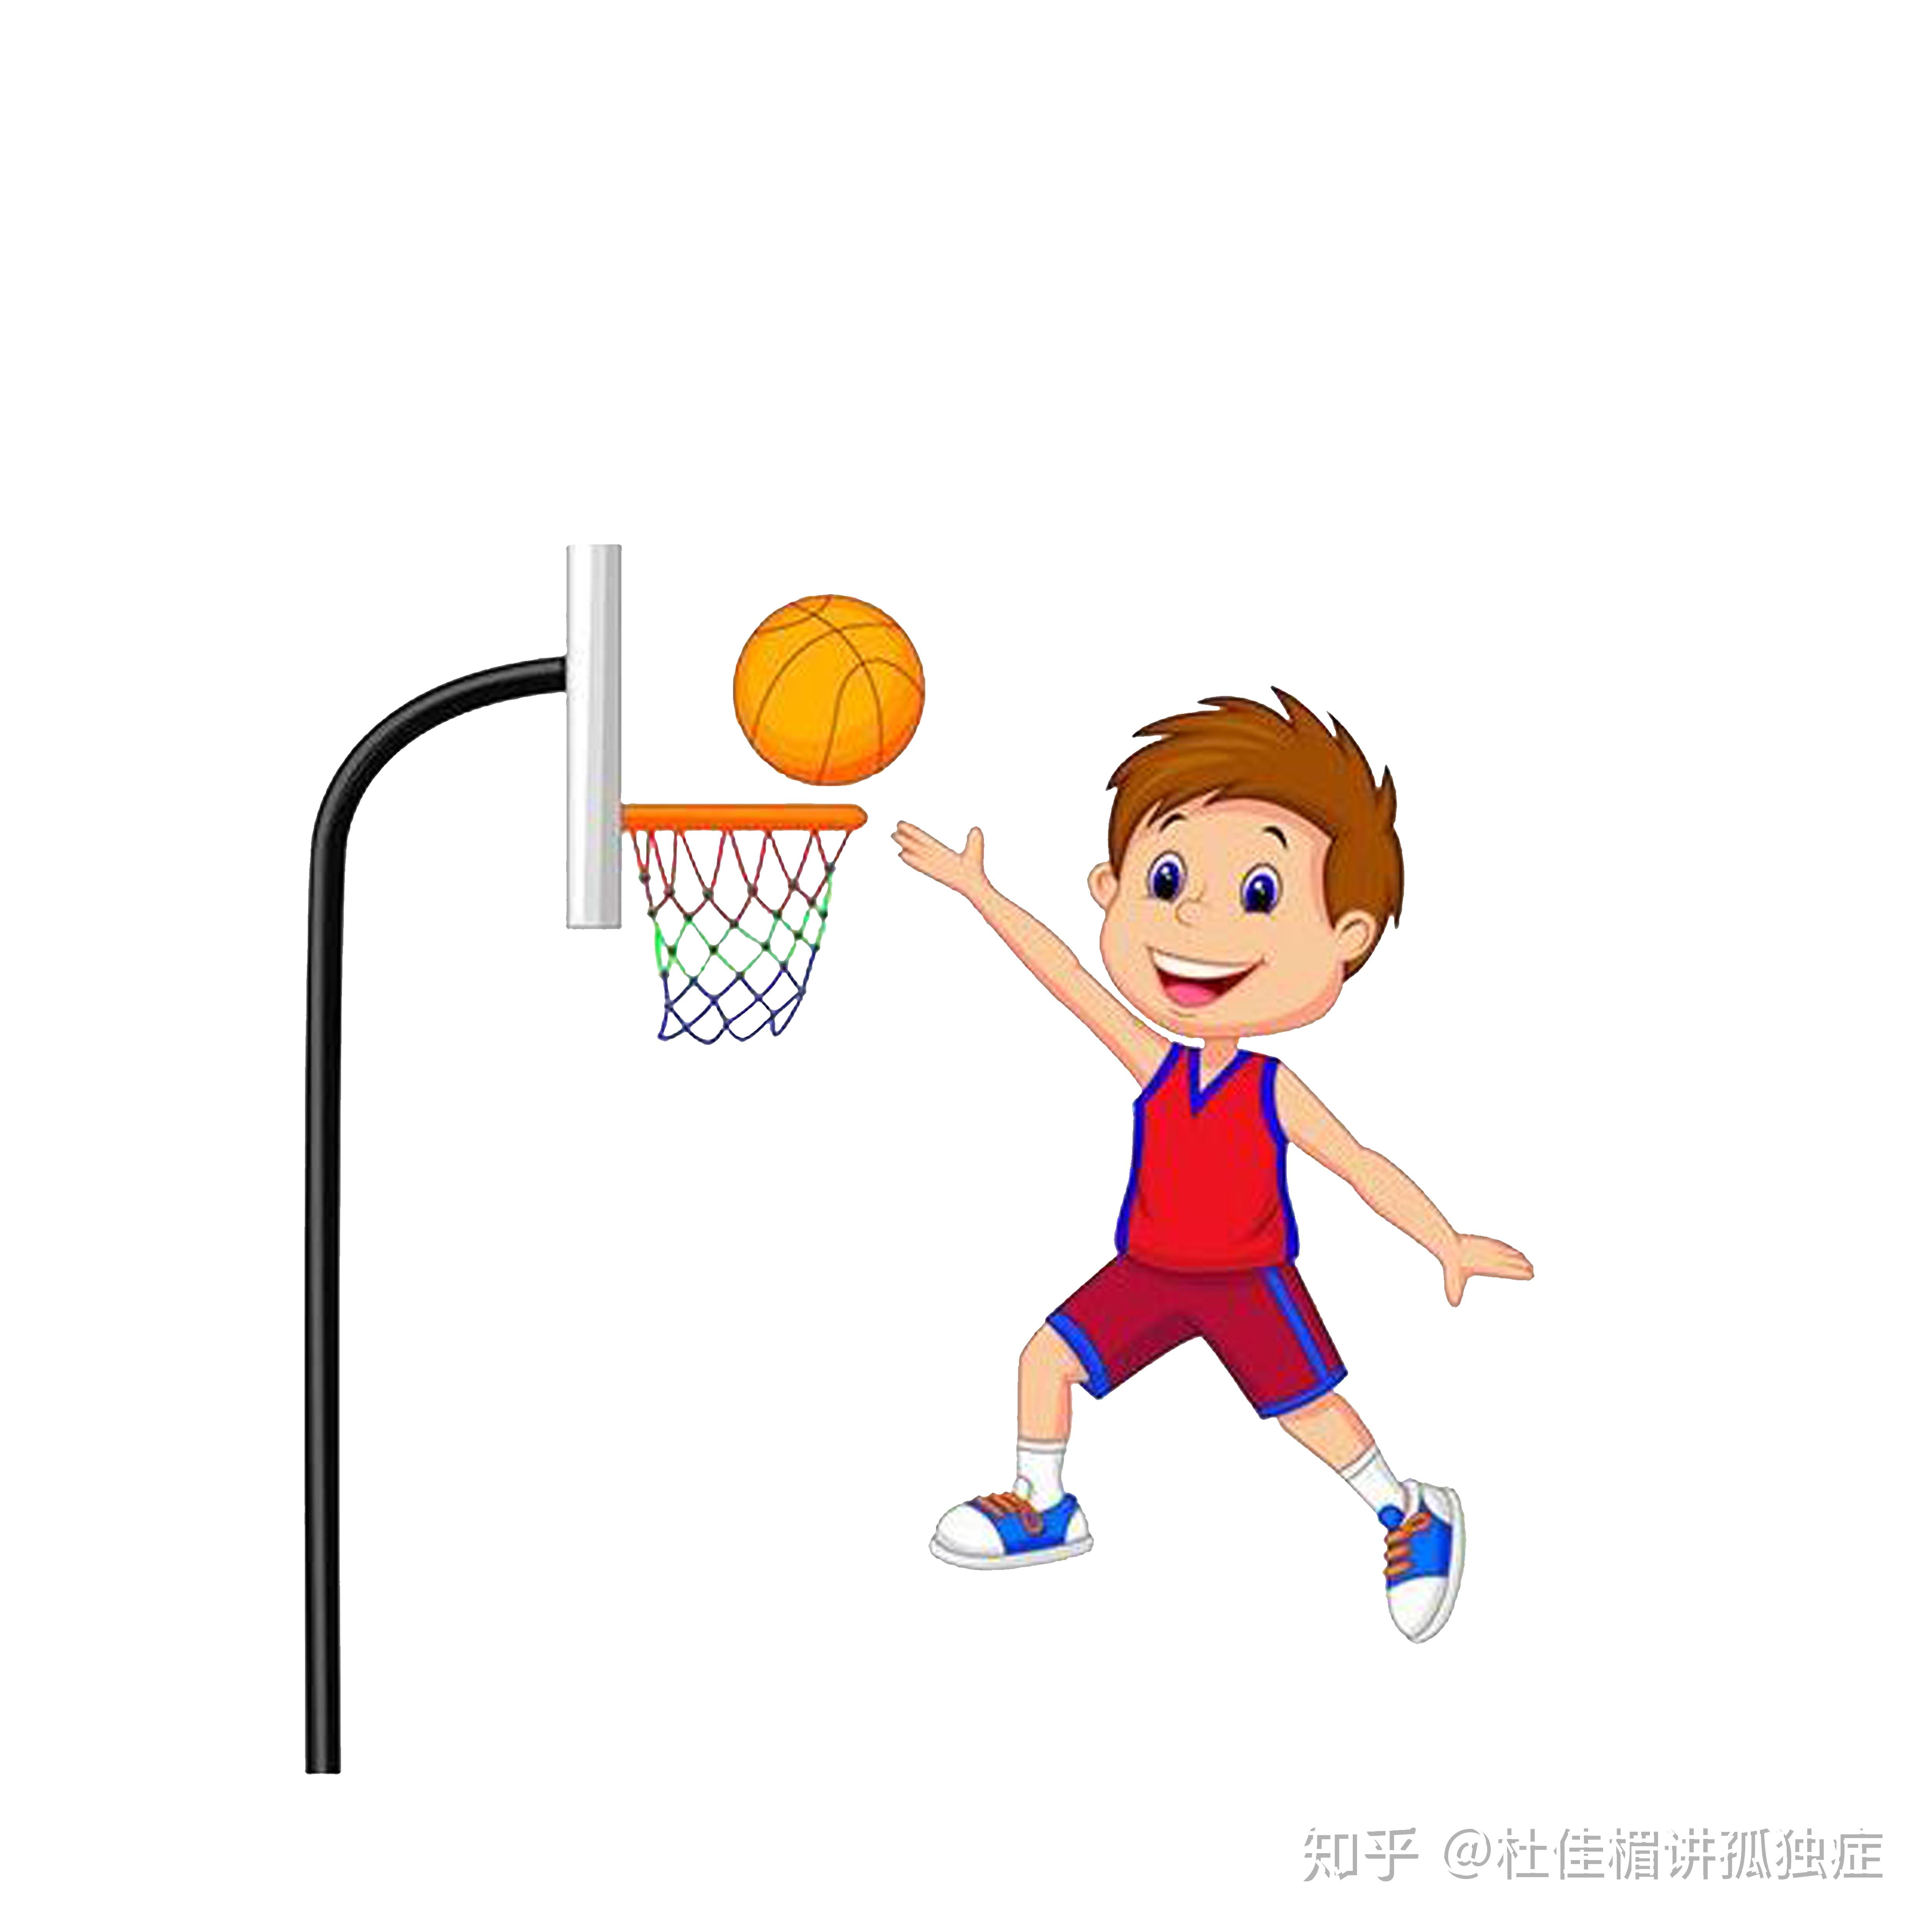 幼儿专用的篮球及篮筐,平时玩的皮球及洗衣篮也可以